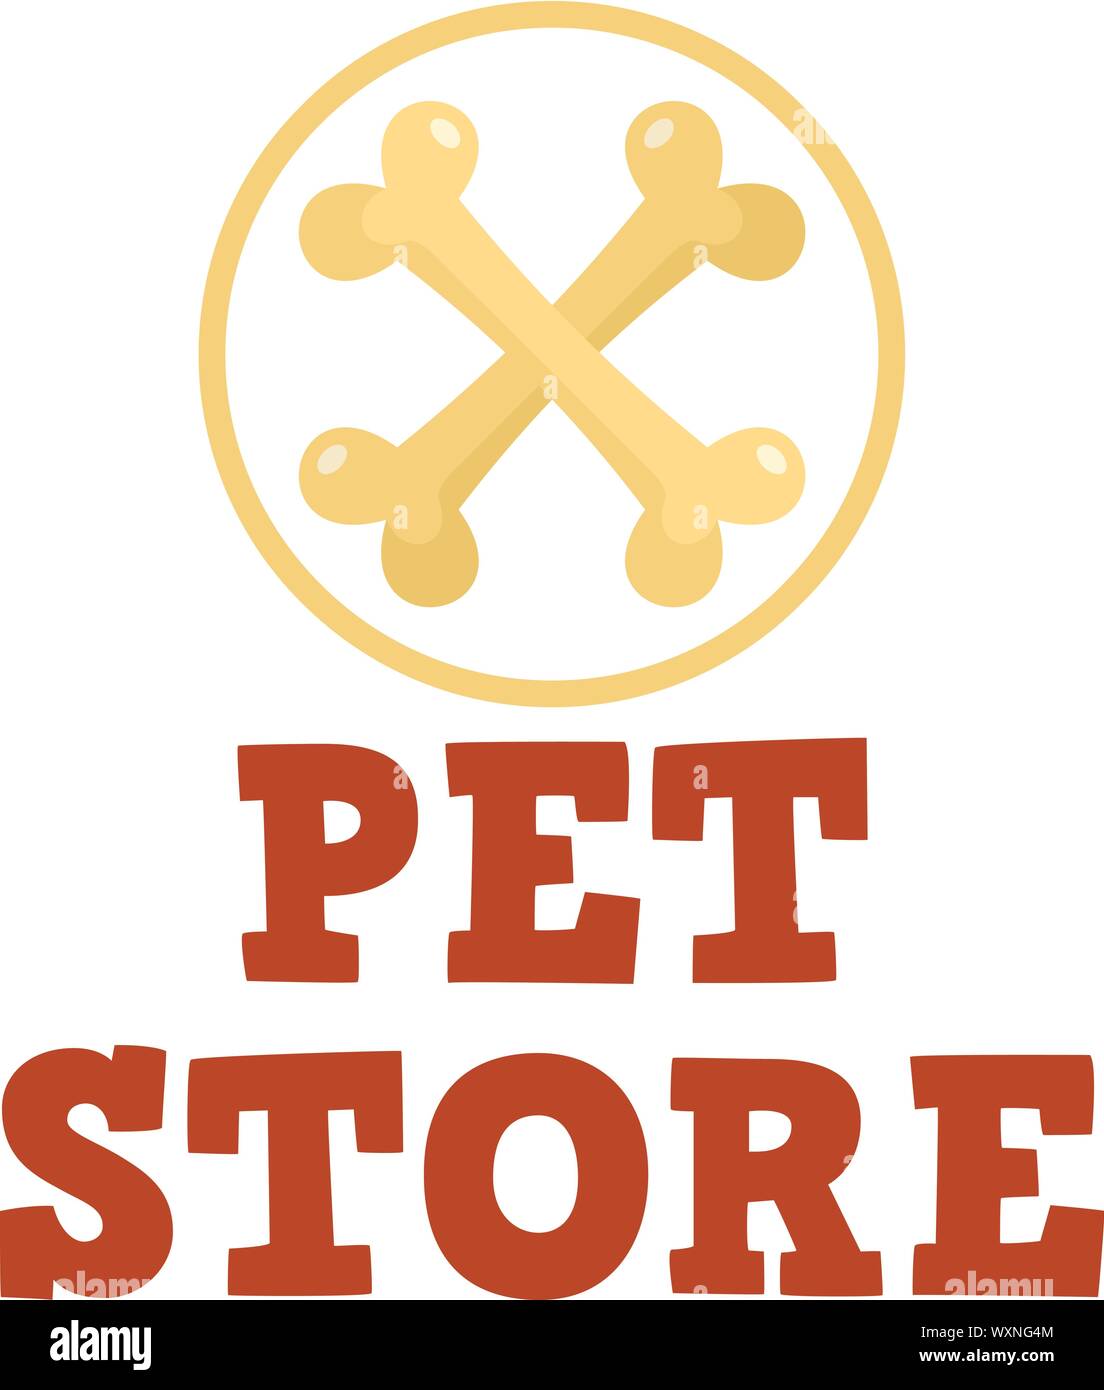 Animal store logo de l'os. Télévision illustration de pet store logo vector d'os pour le web design Illustration de Vecteur